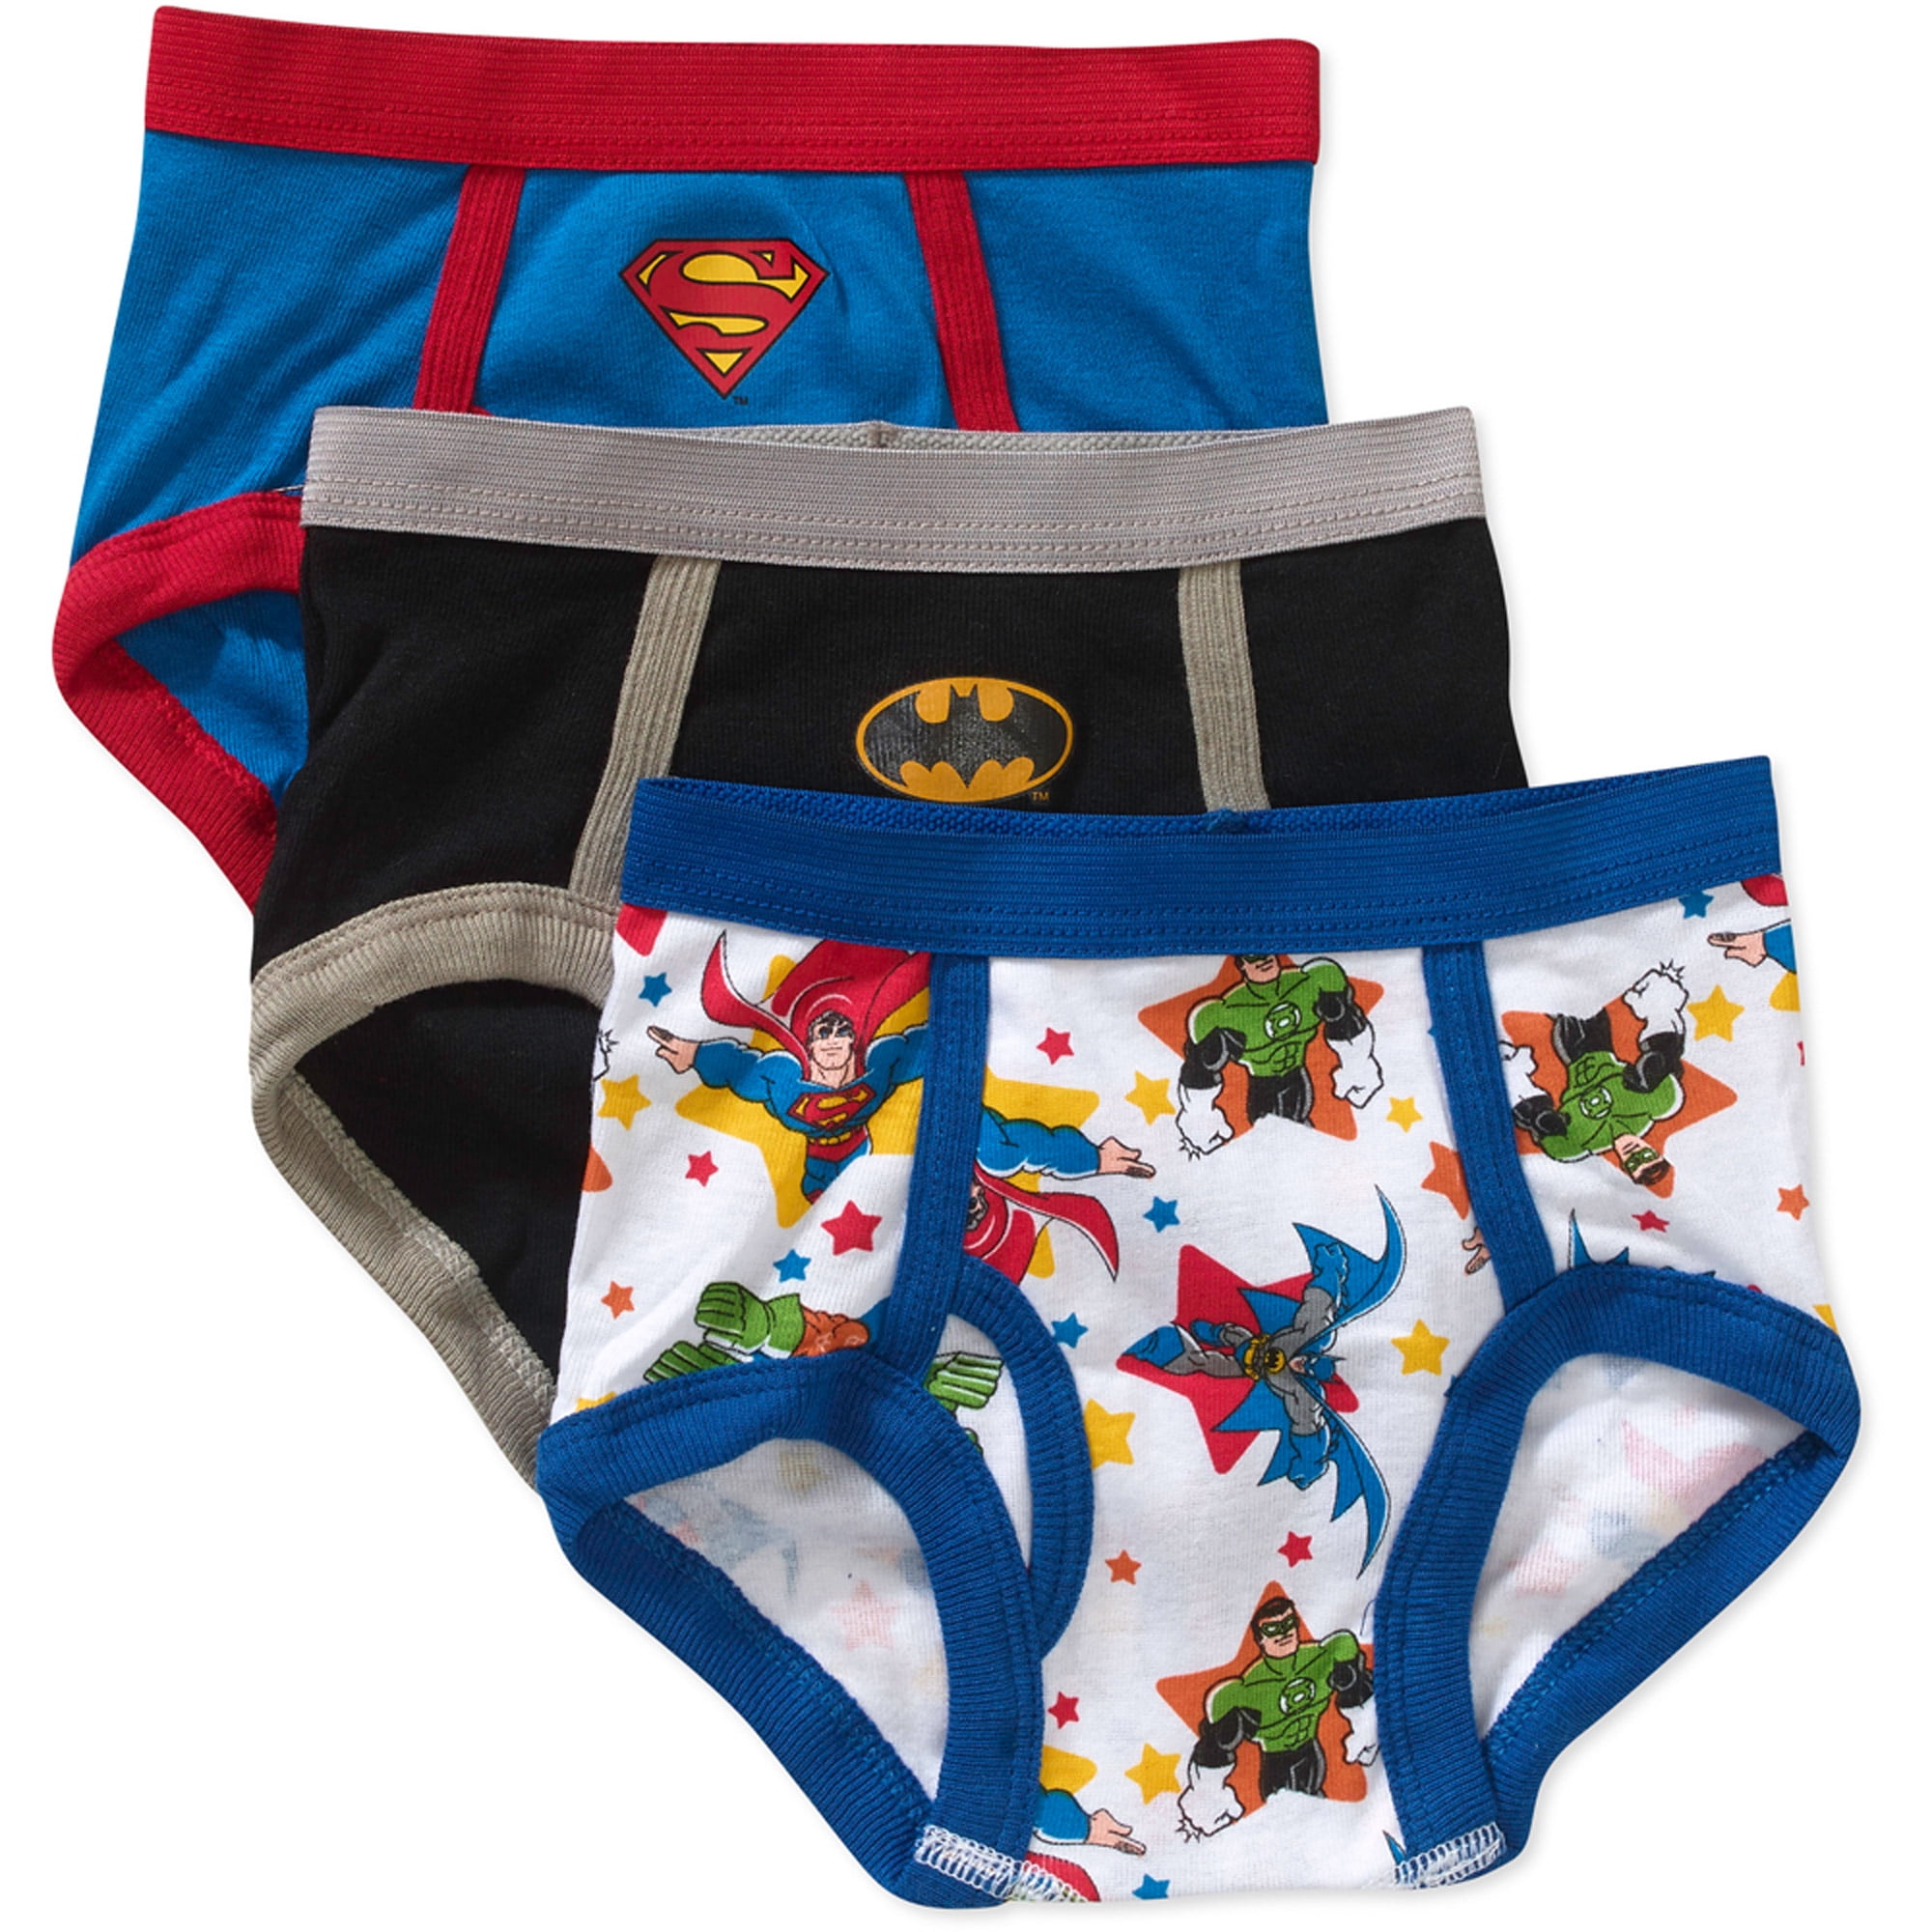 DC Superhero Friend's Boys Briefs 7-Pack Underwear Size 2T